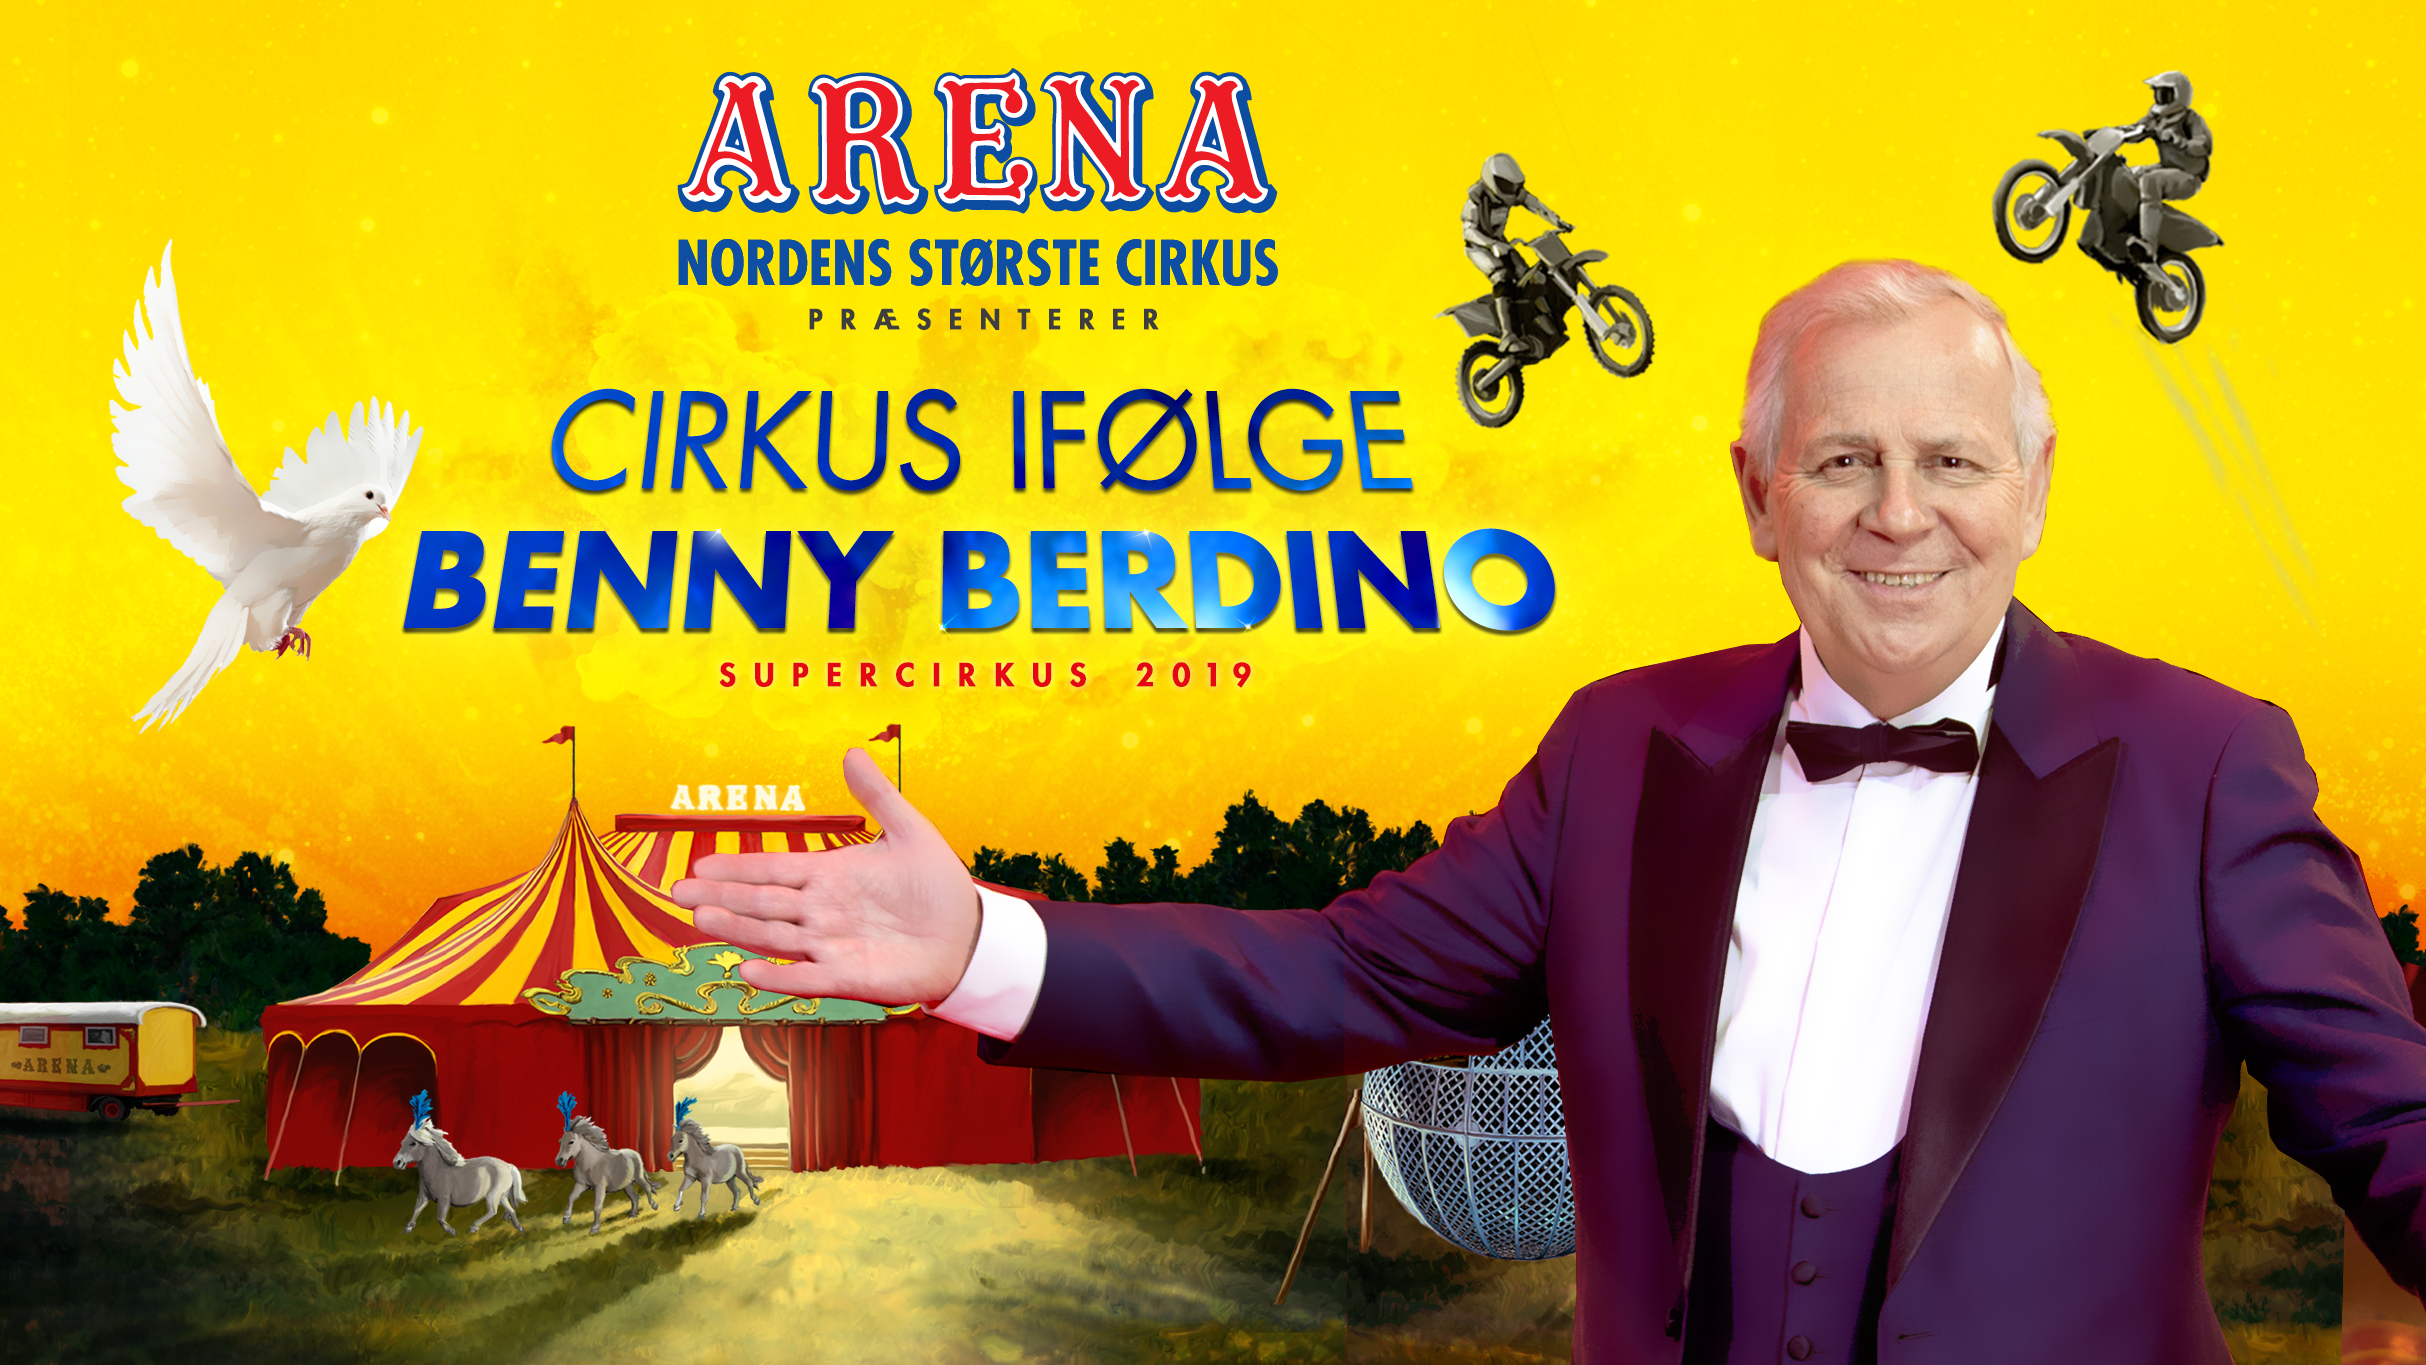 Cirkus Arena og Clemens spiller i Horsens onsdag den 18. april og torsdag den 19. april 2018.